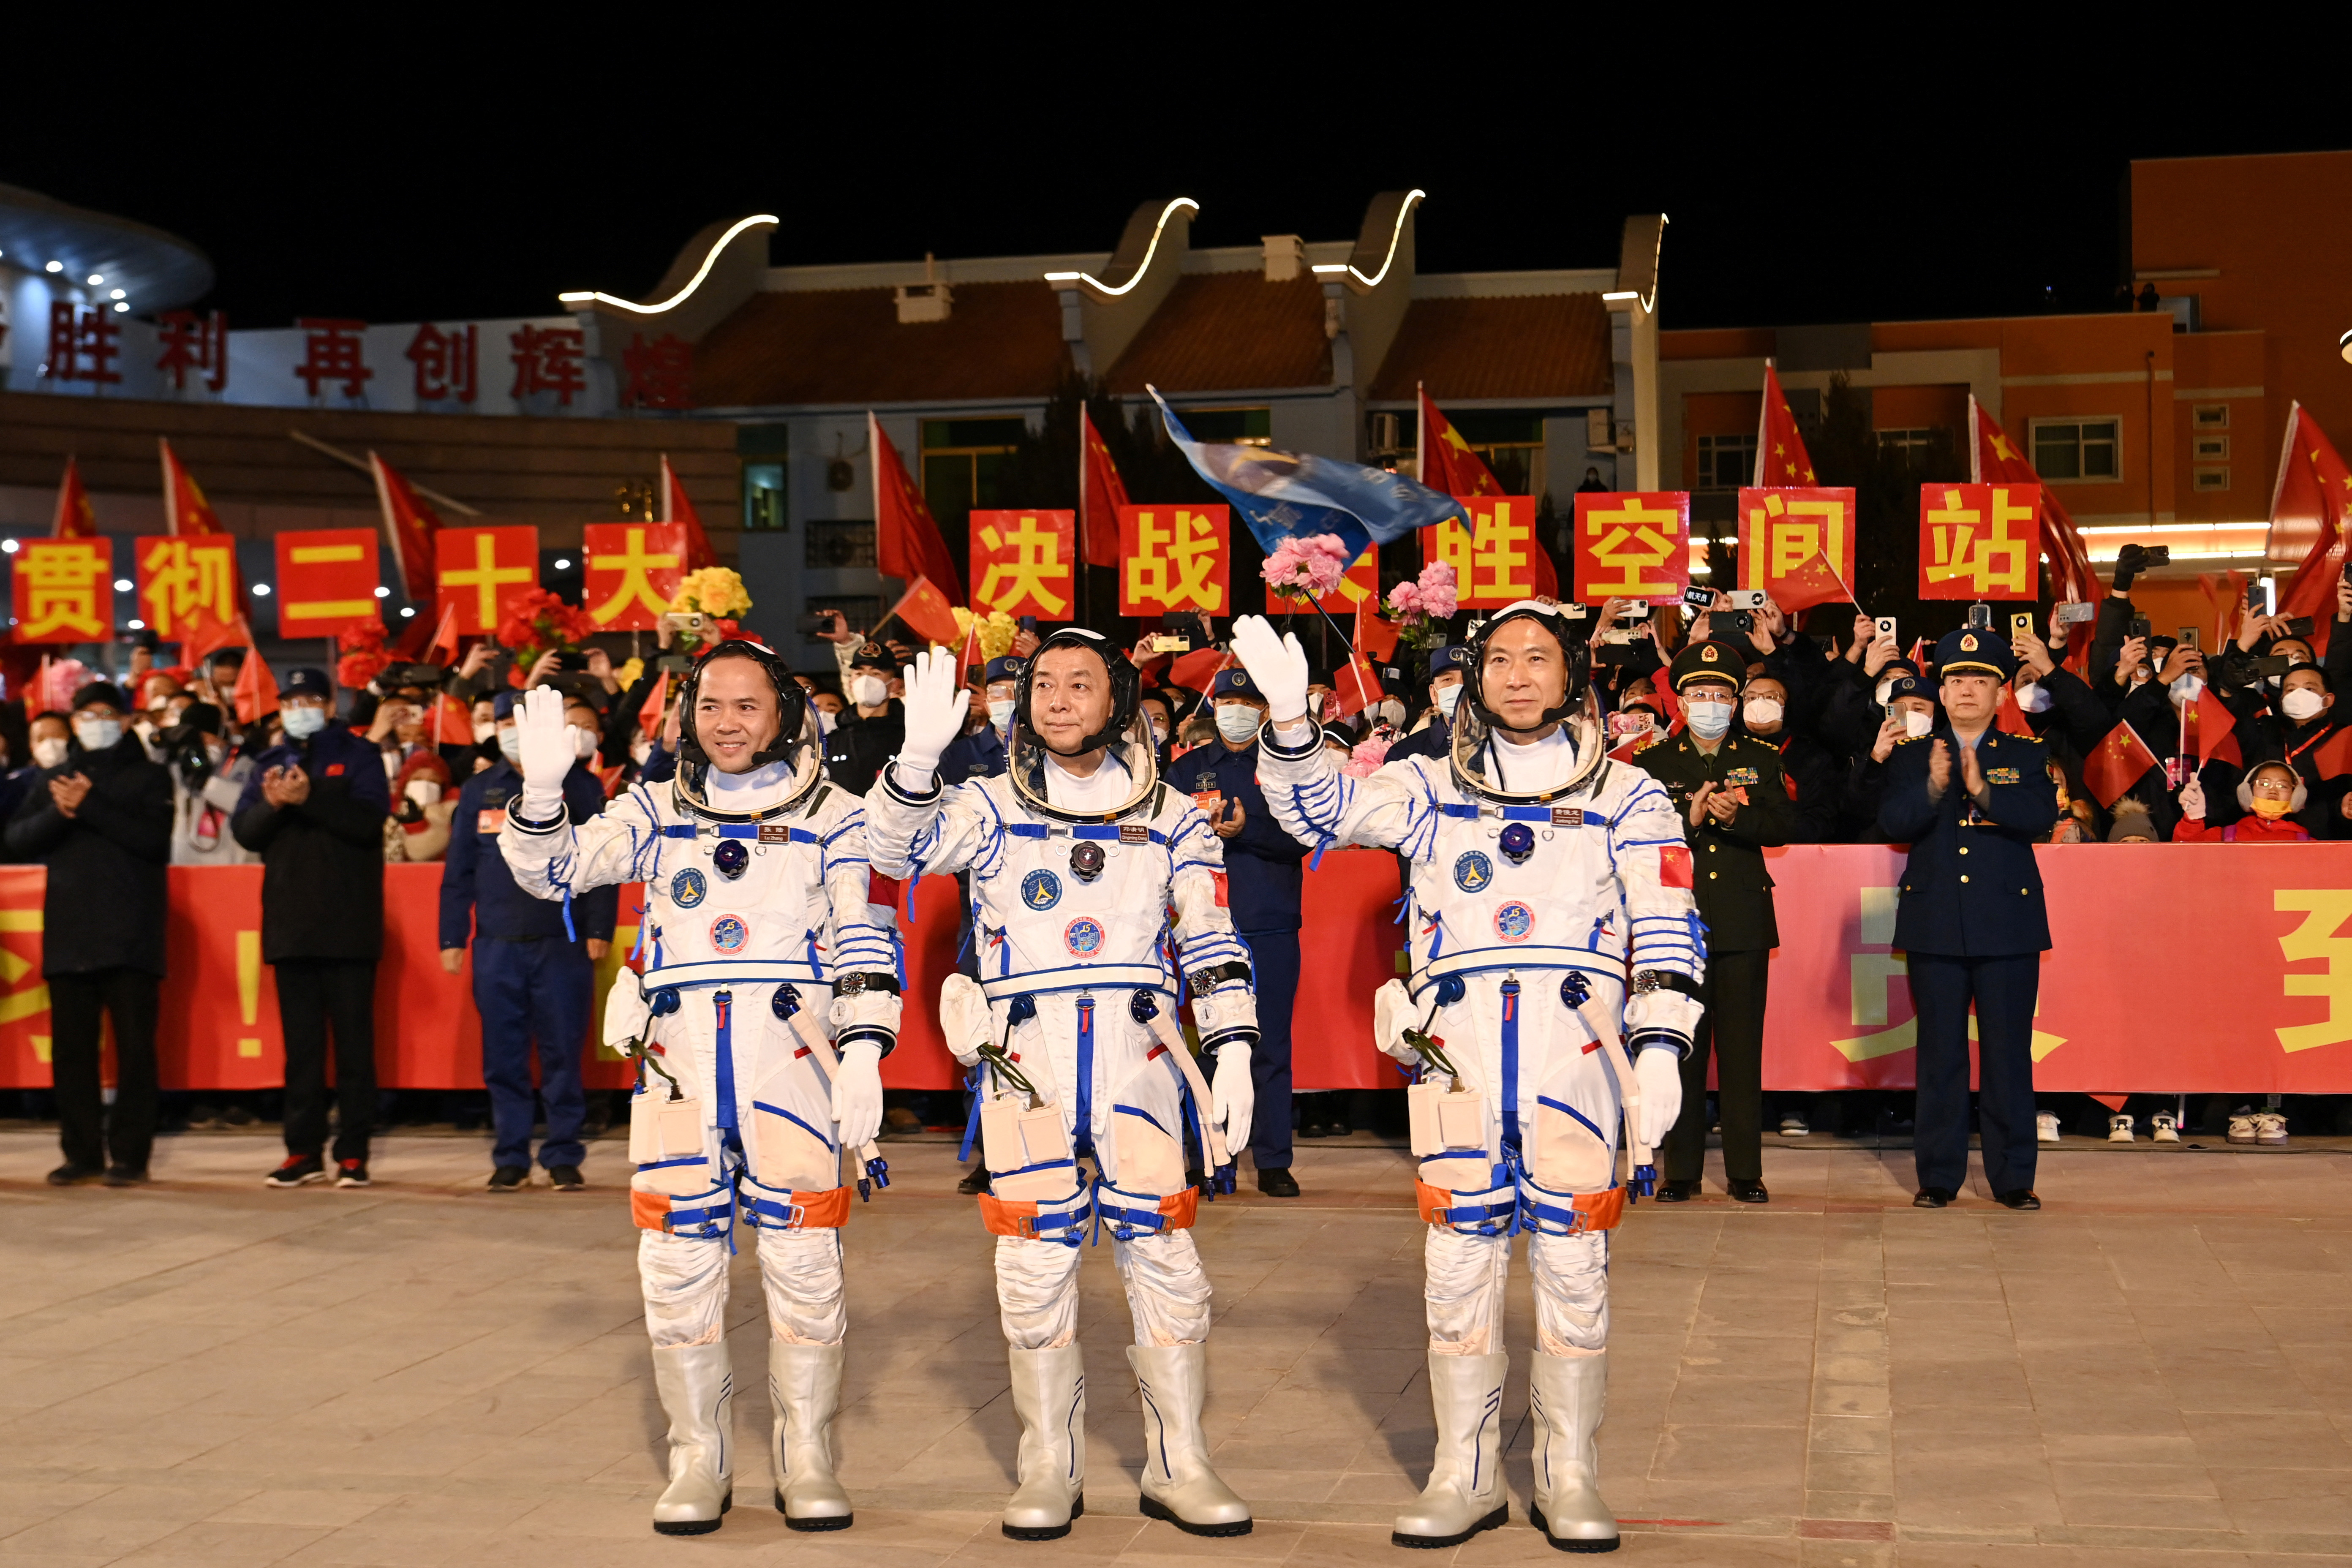 Los astronautas Fei Junlong, Deng Qingming y Zhang Lu en el Centro de Lanzamiento de Satélites de Jiuquan